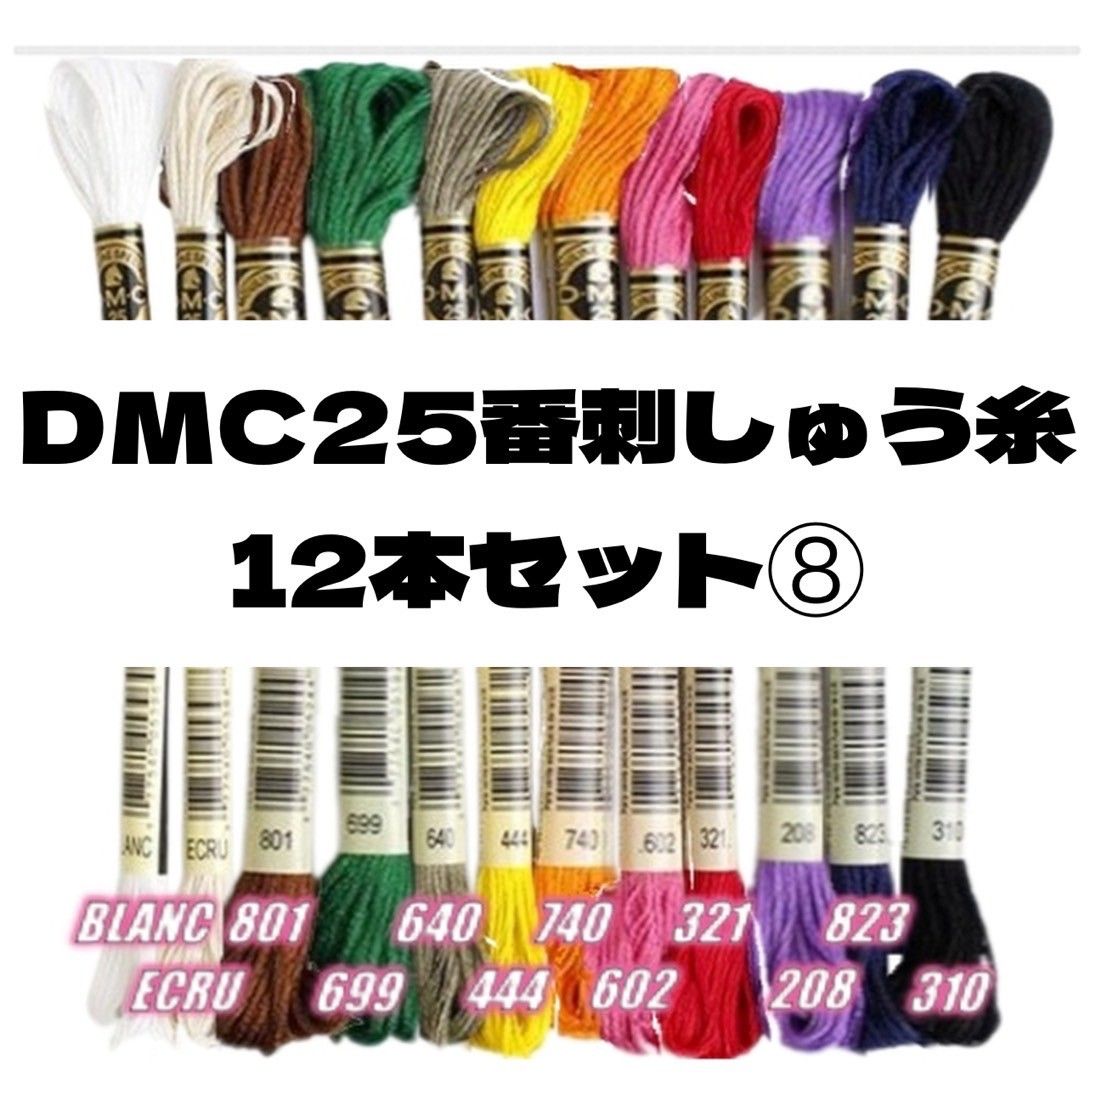 DMC25 刺しゅう糸 #25 12本セット⑥